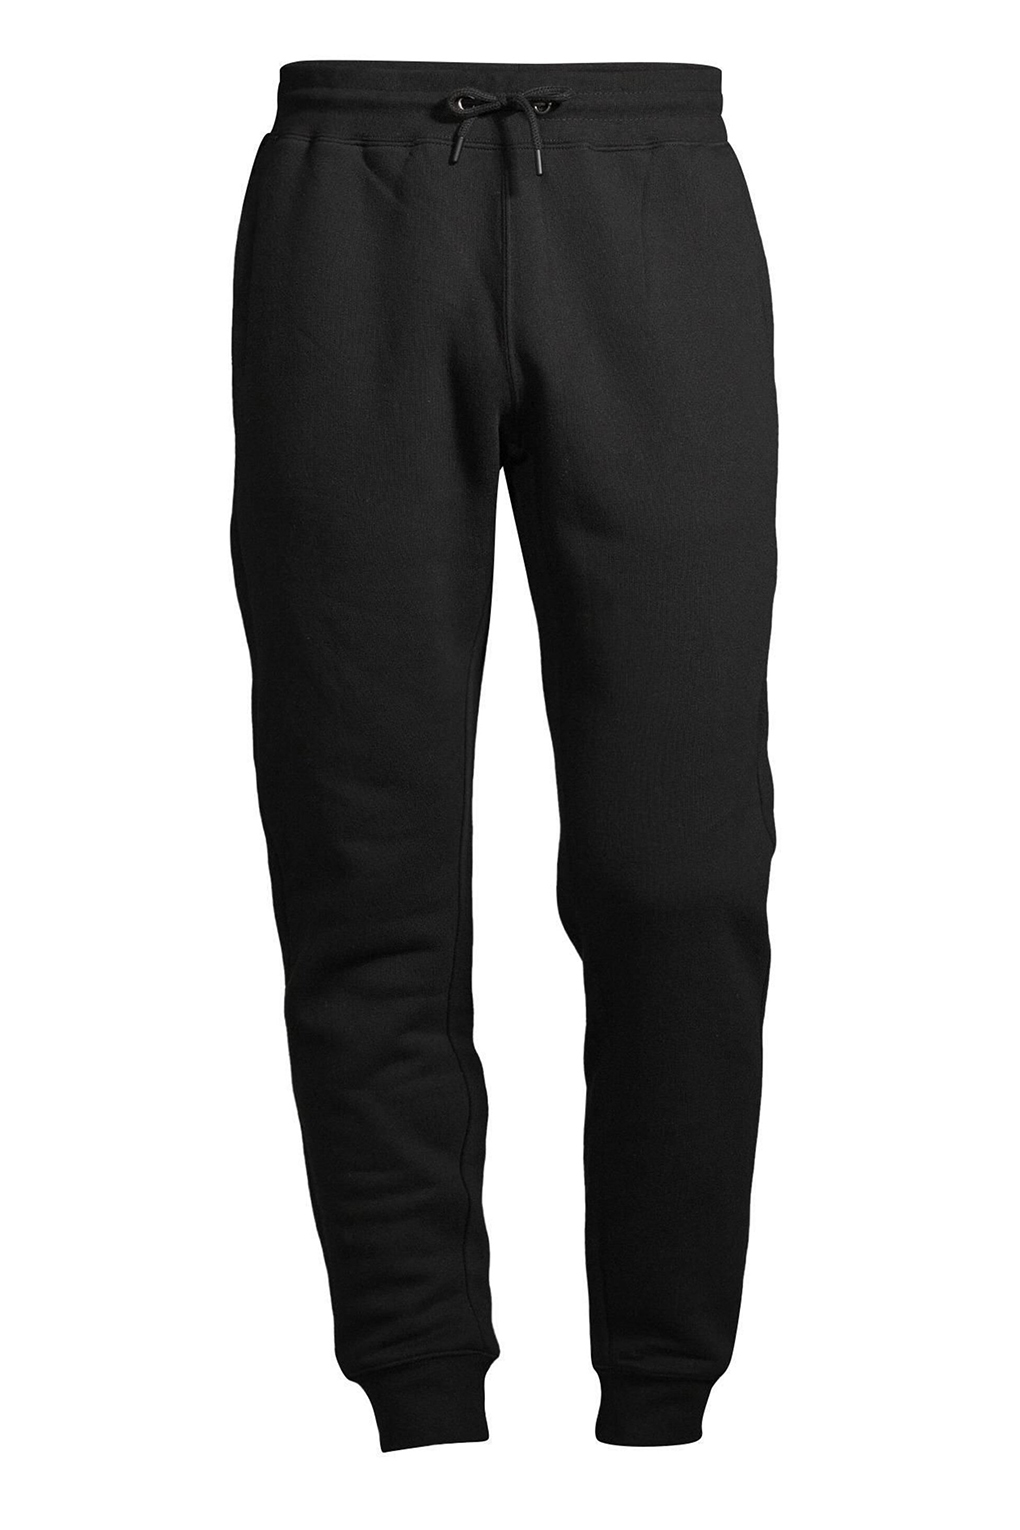 Спортивные брюки мужские Construe 2110 DEAN черные L